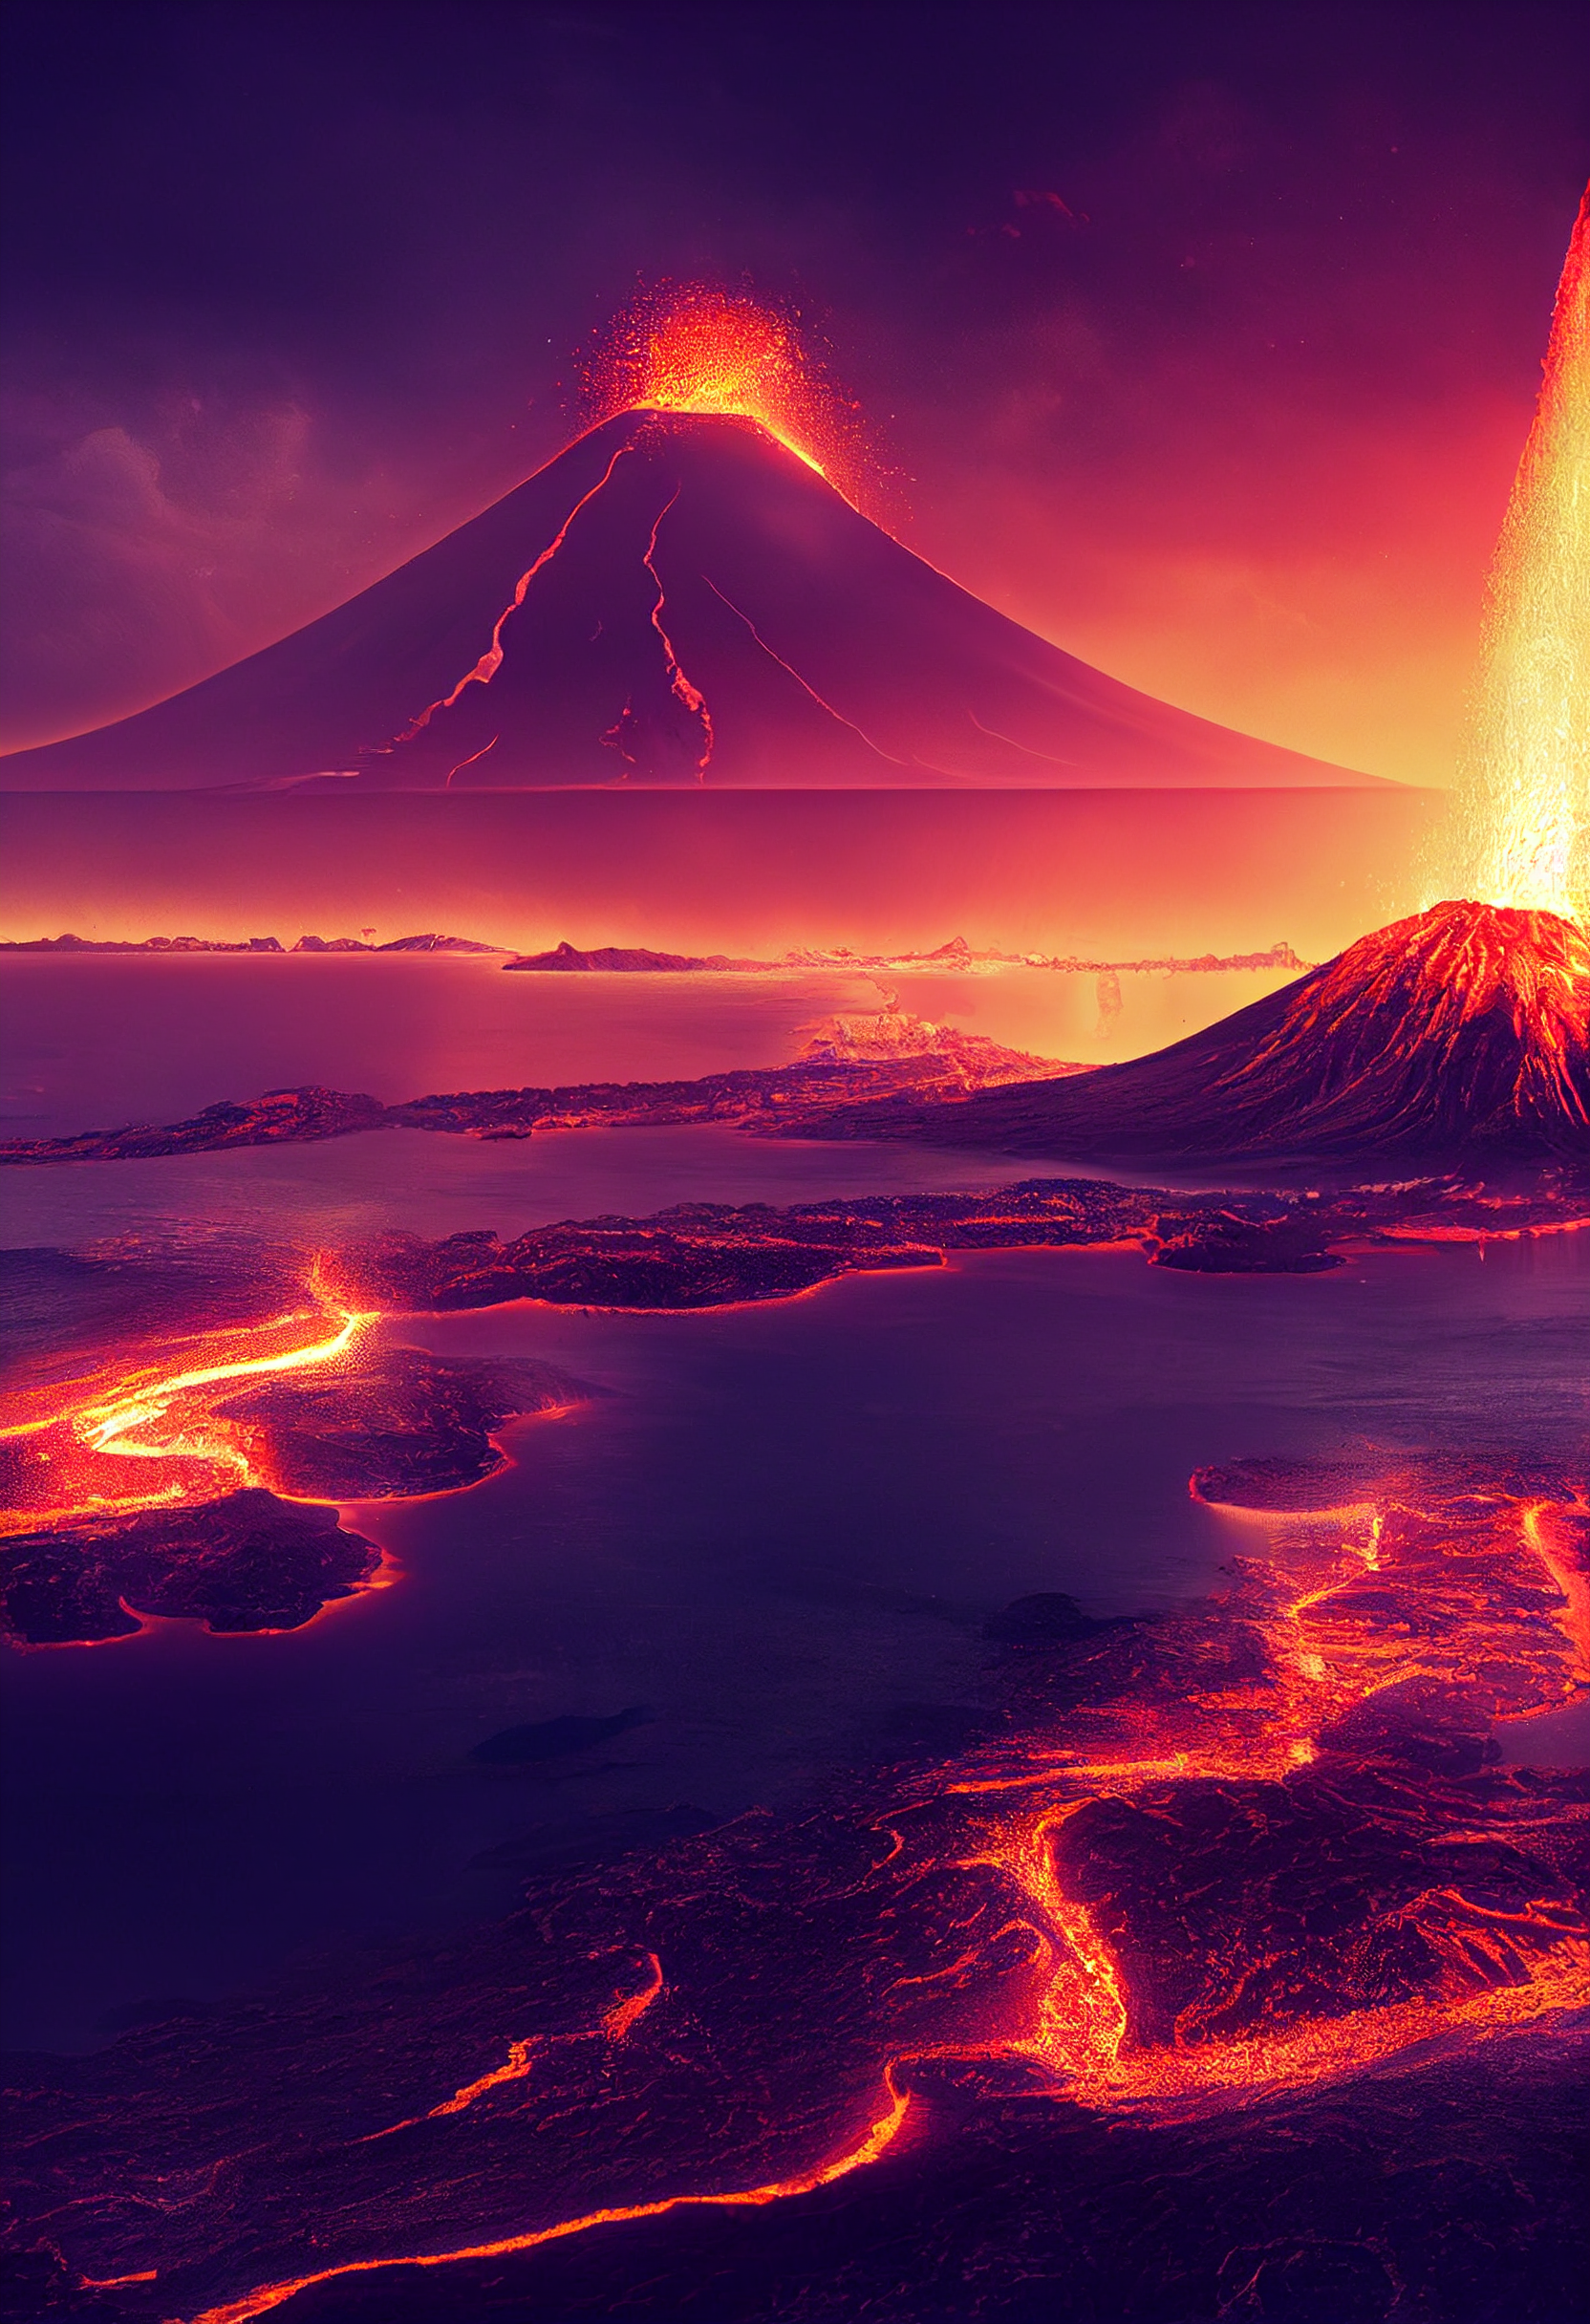 喷发的火山岛、神秘的神奇场景、雄伟的香草天空照明、Ghilbi工作室的超